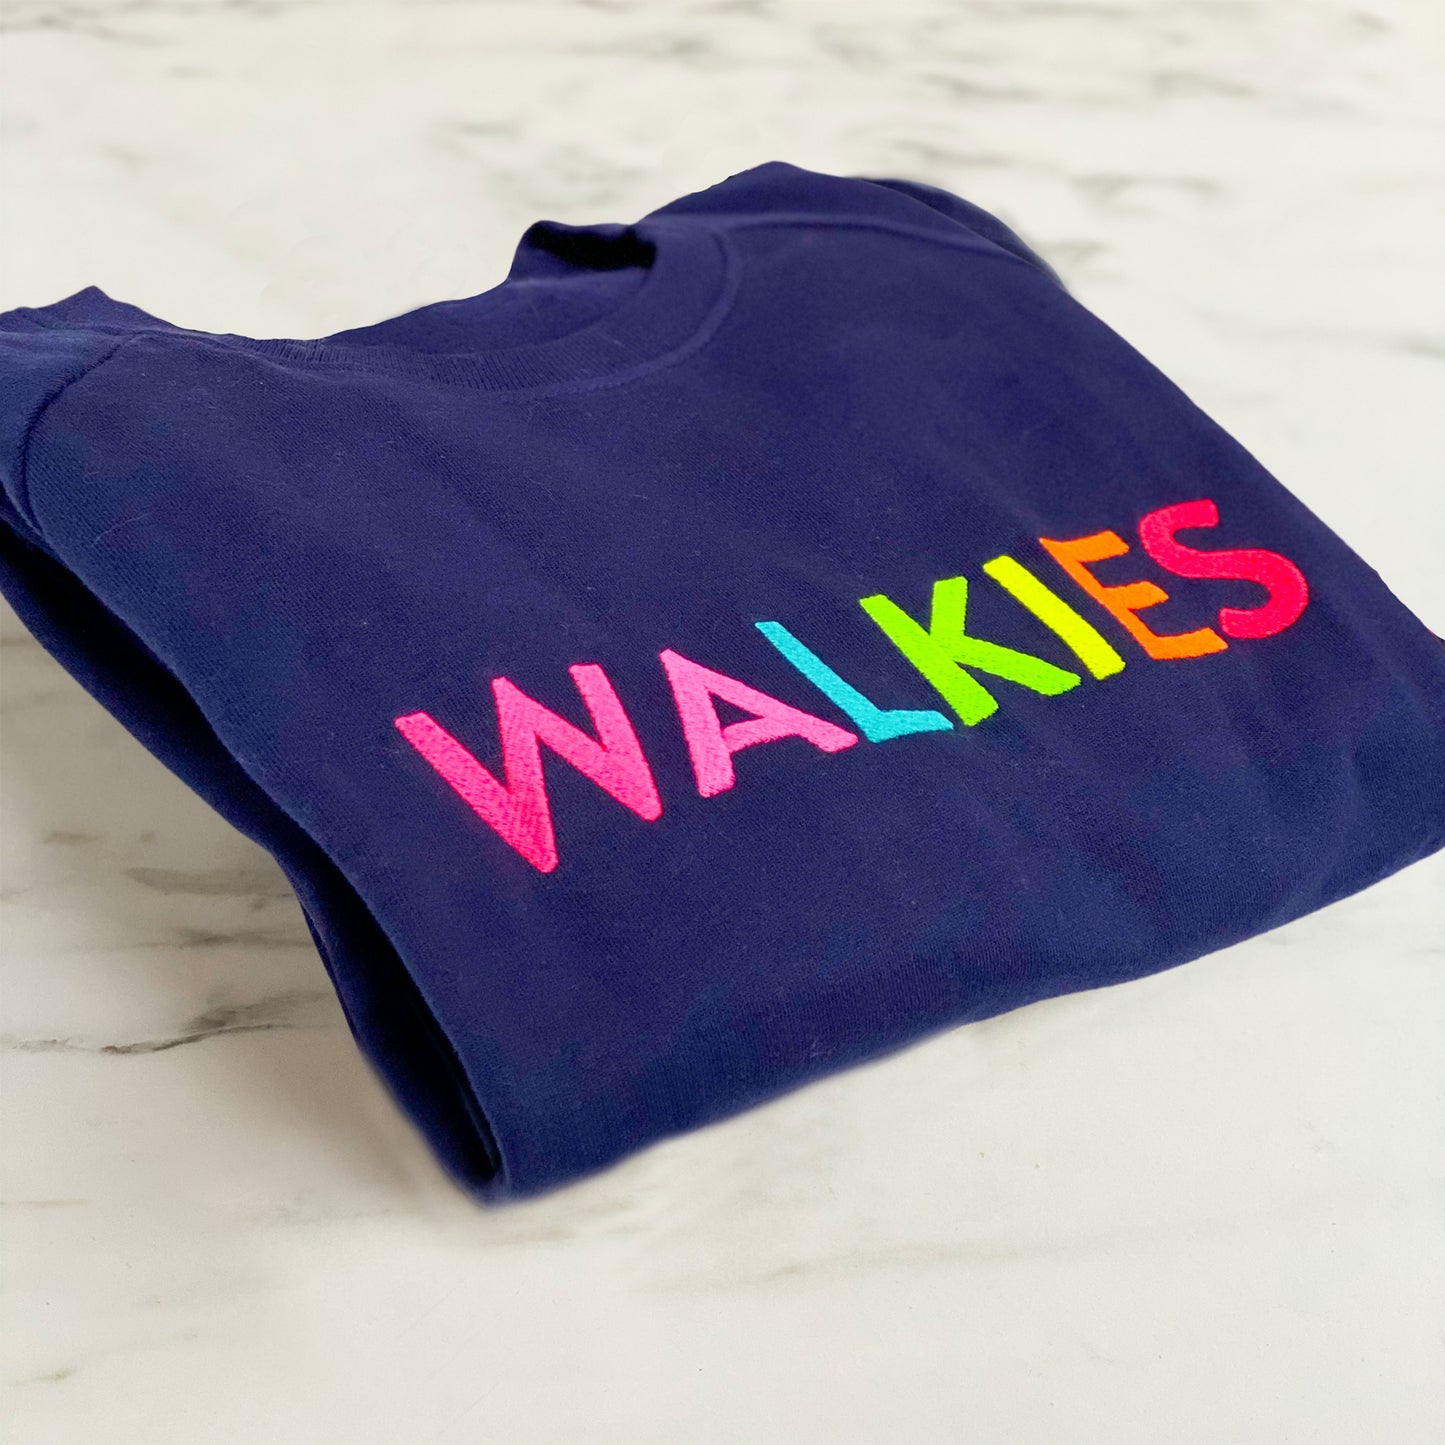 WALKIES Slogan Sweatshirt | Navy with Neon Rainbow Embroidery